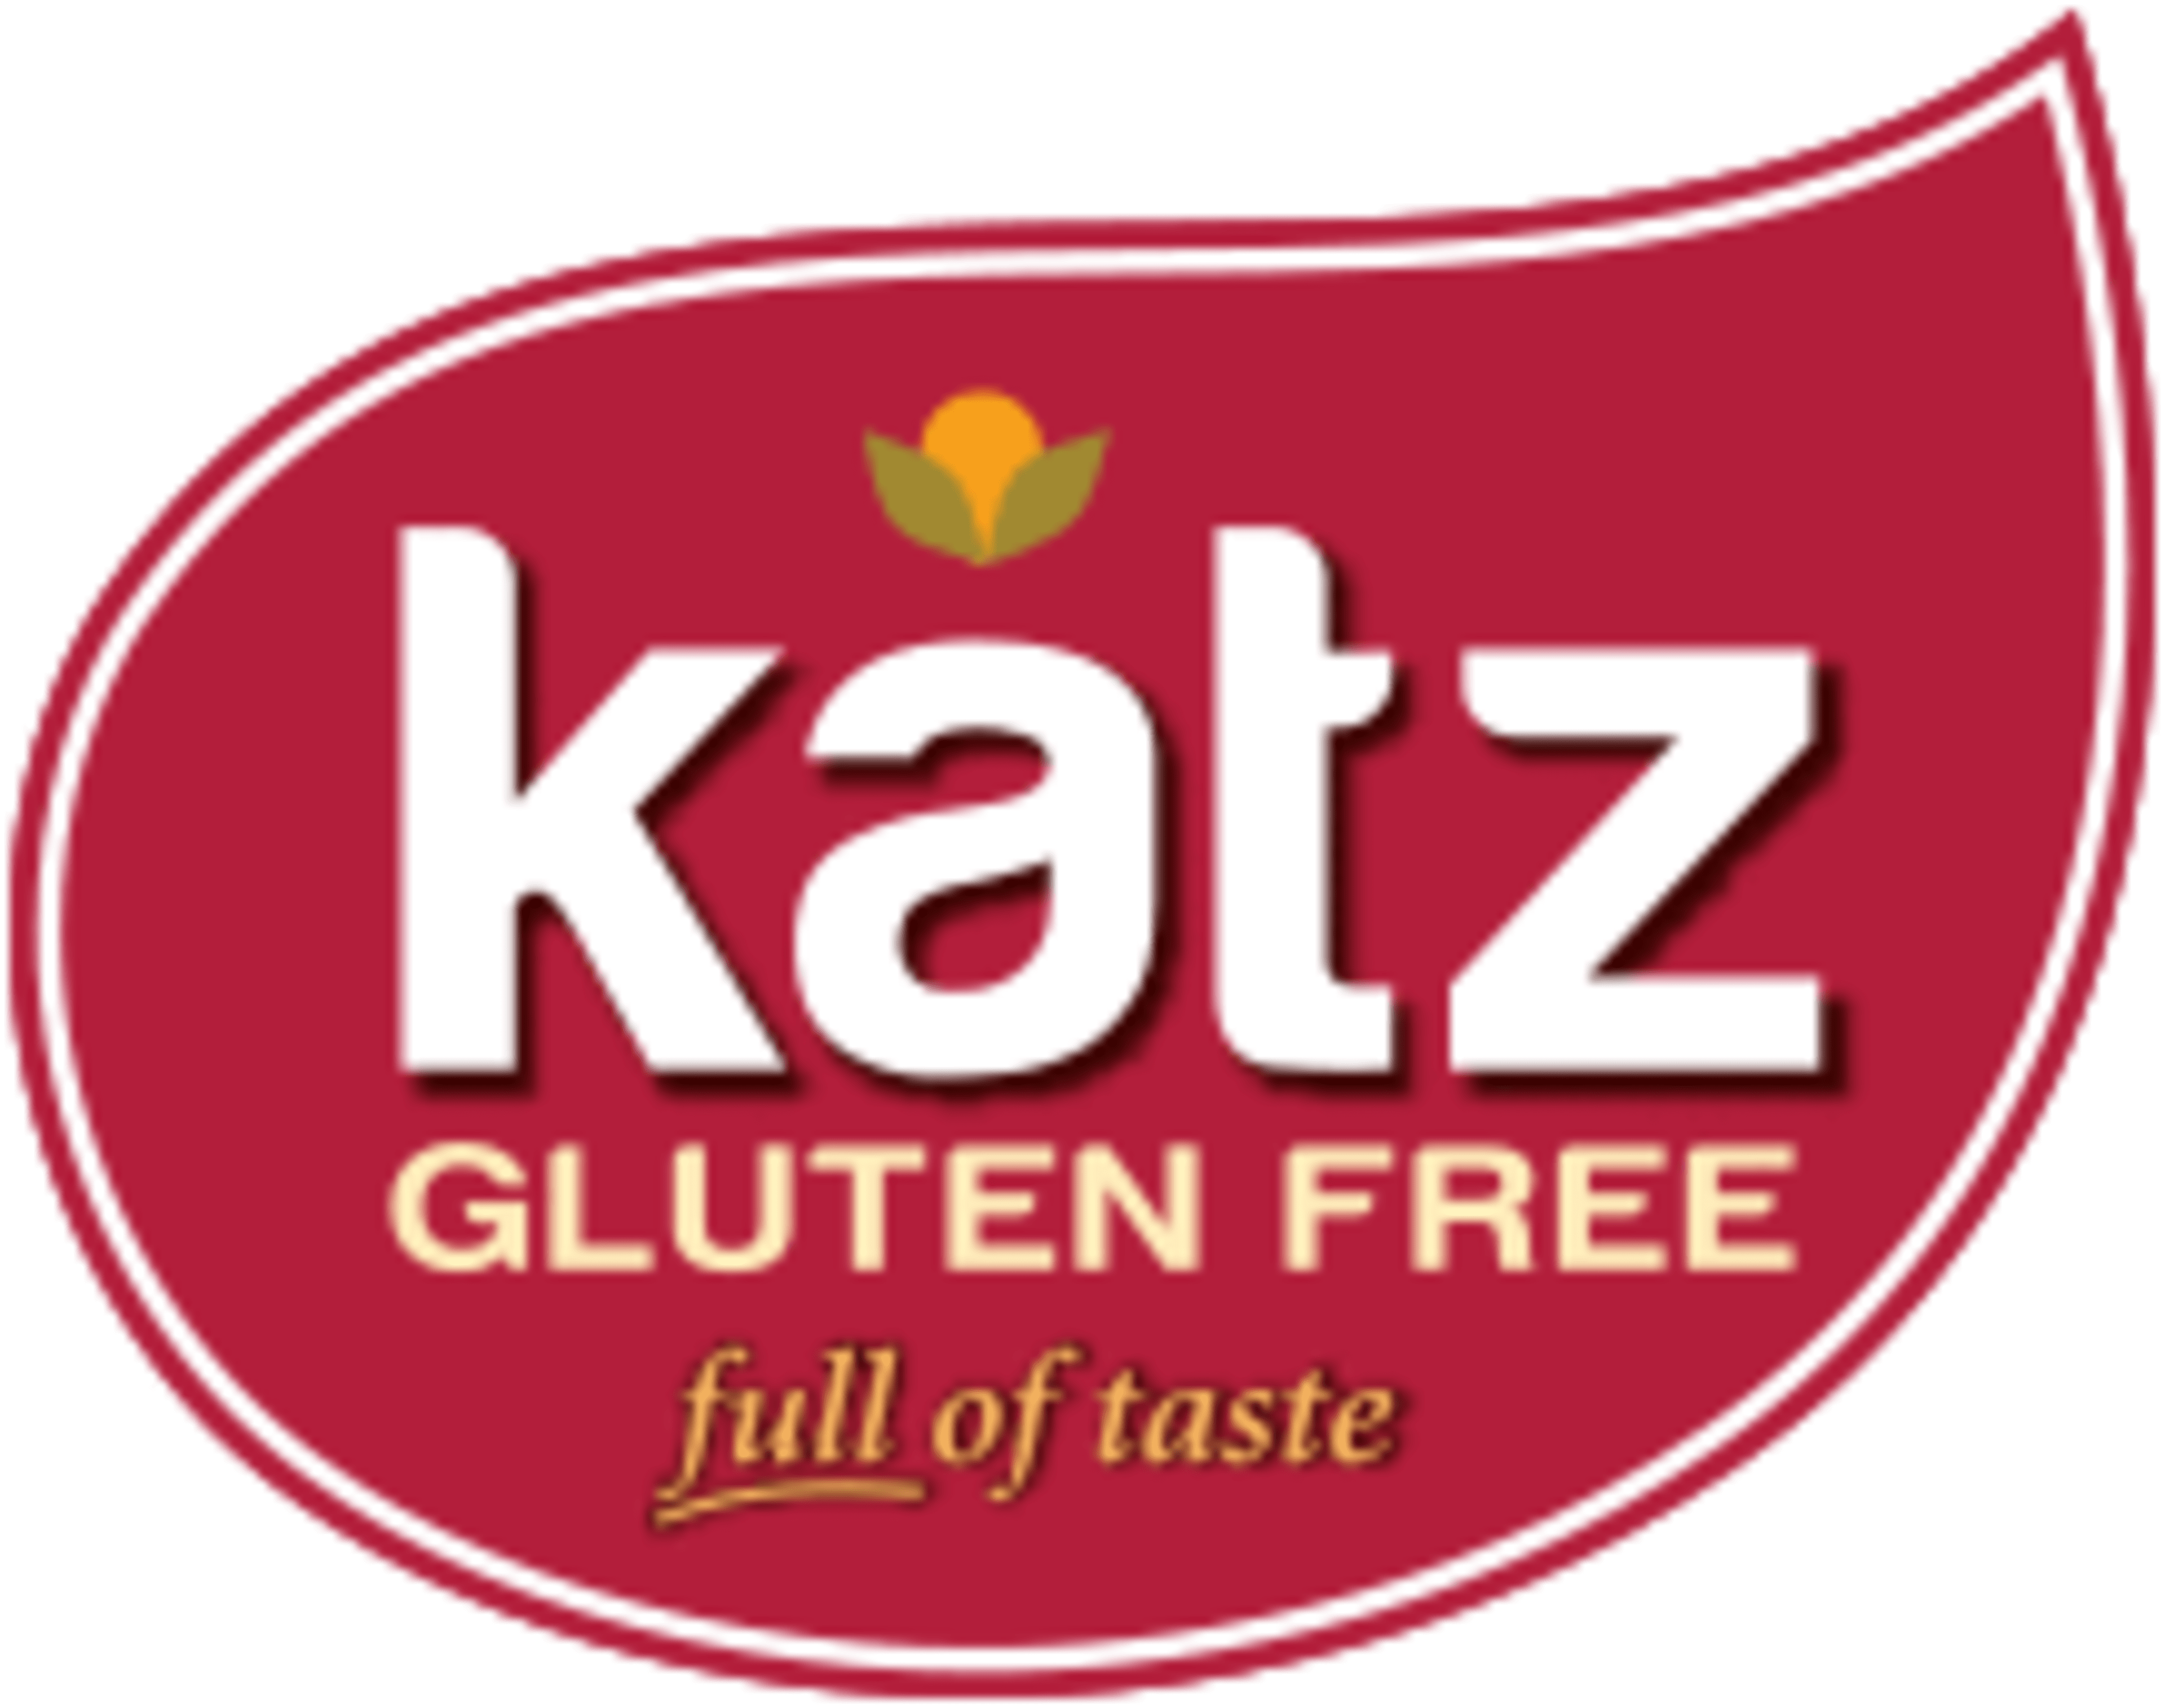 Katz Gluten Free Code